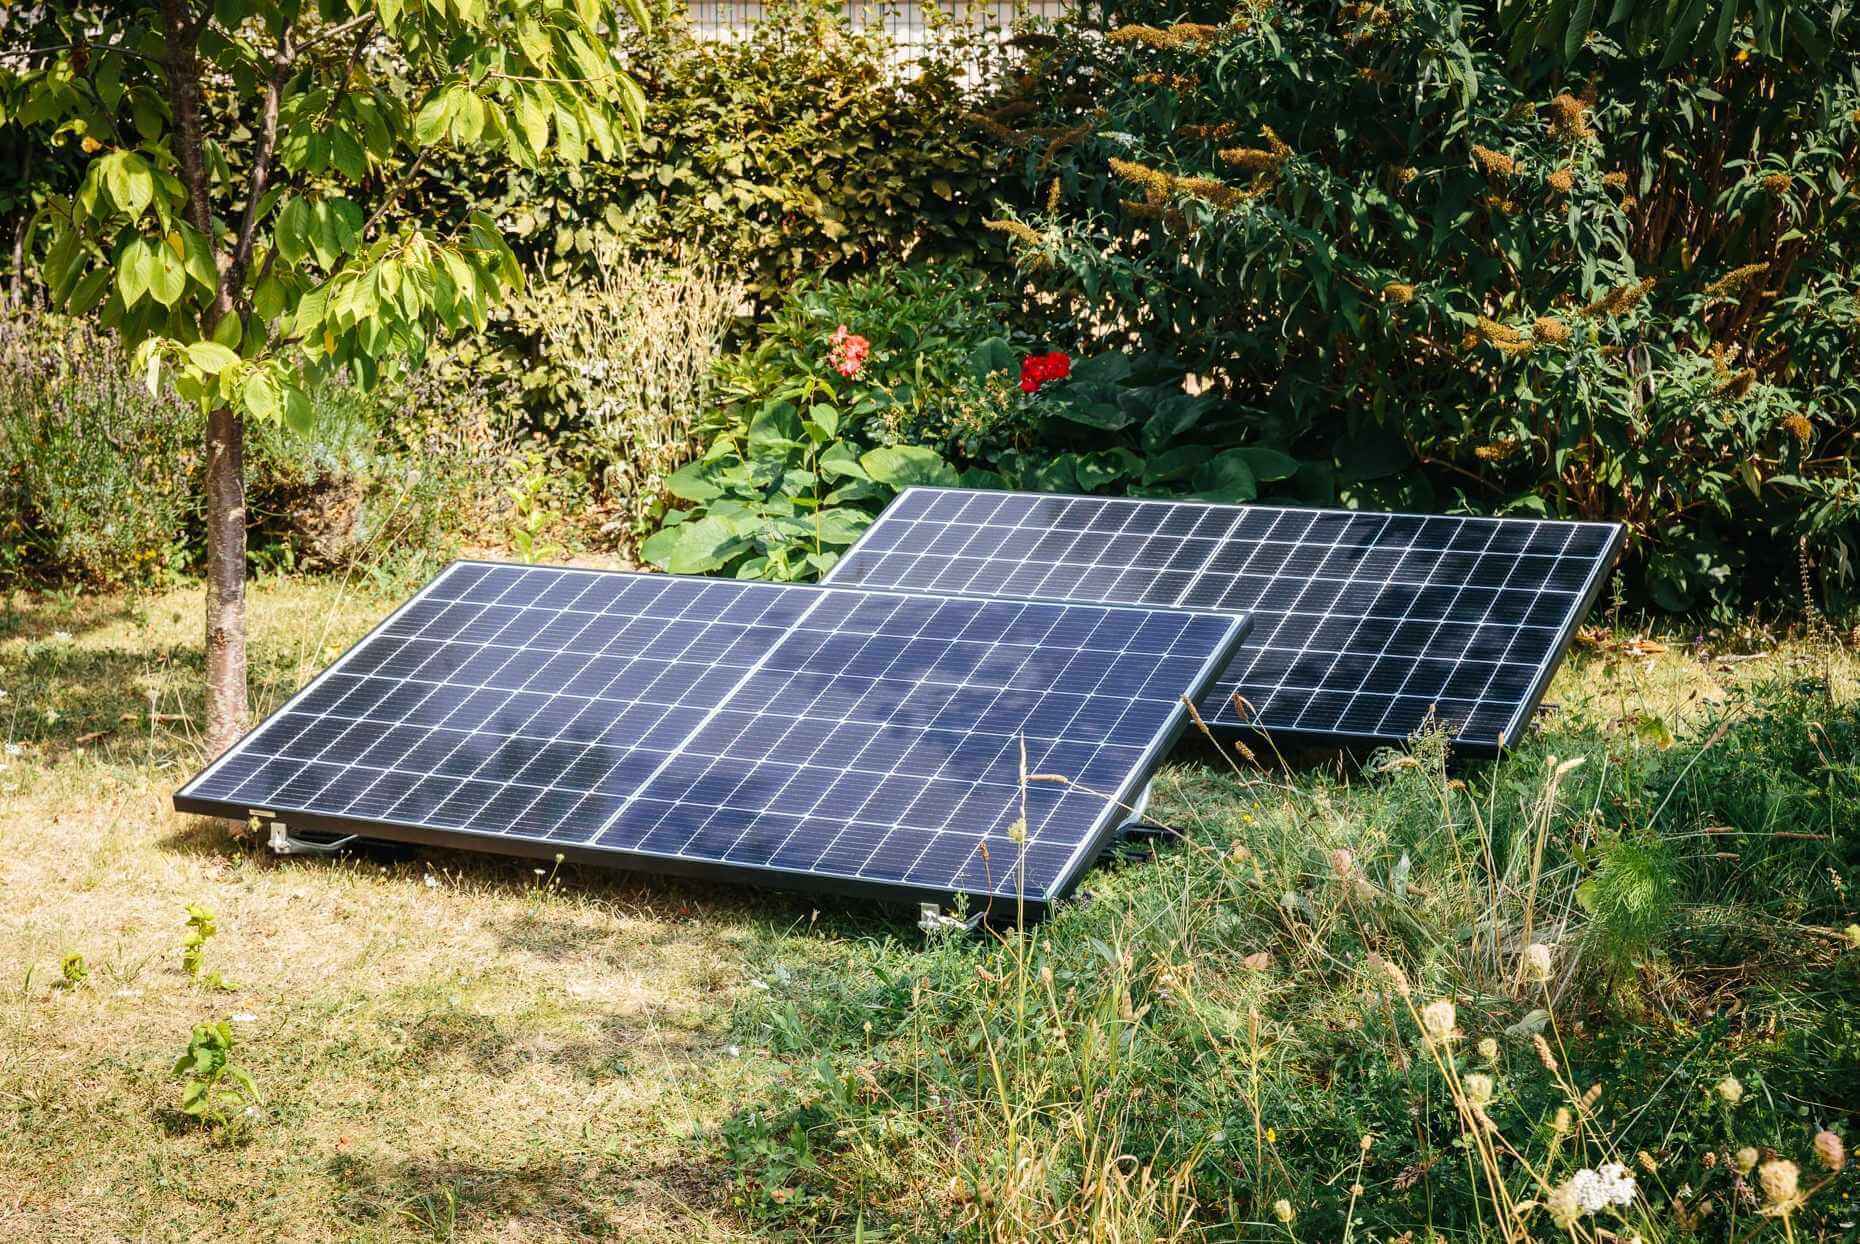 Yuma Flat 800 Balkonkraftwerk im Garten: 600W Einspeisebegrenzung und neue Solarmodule von Tenka Solar